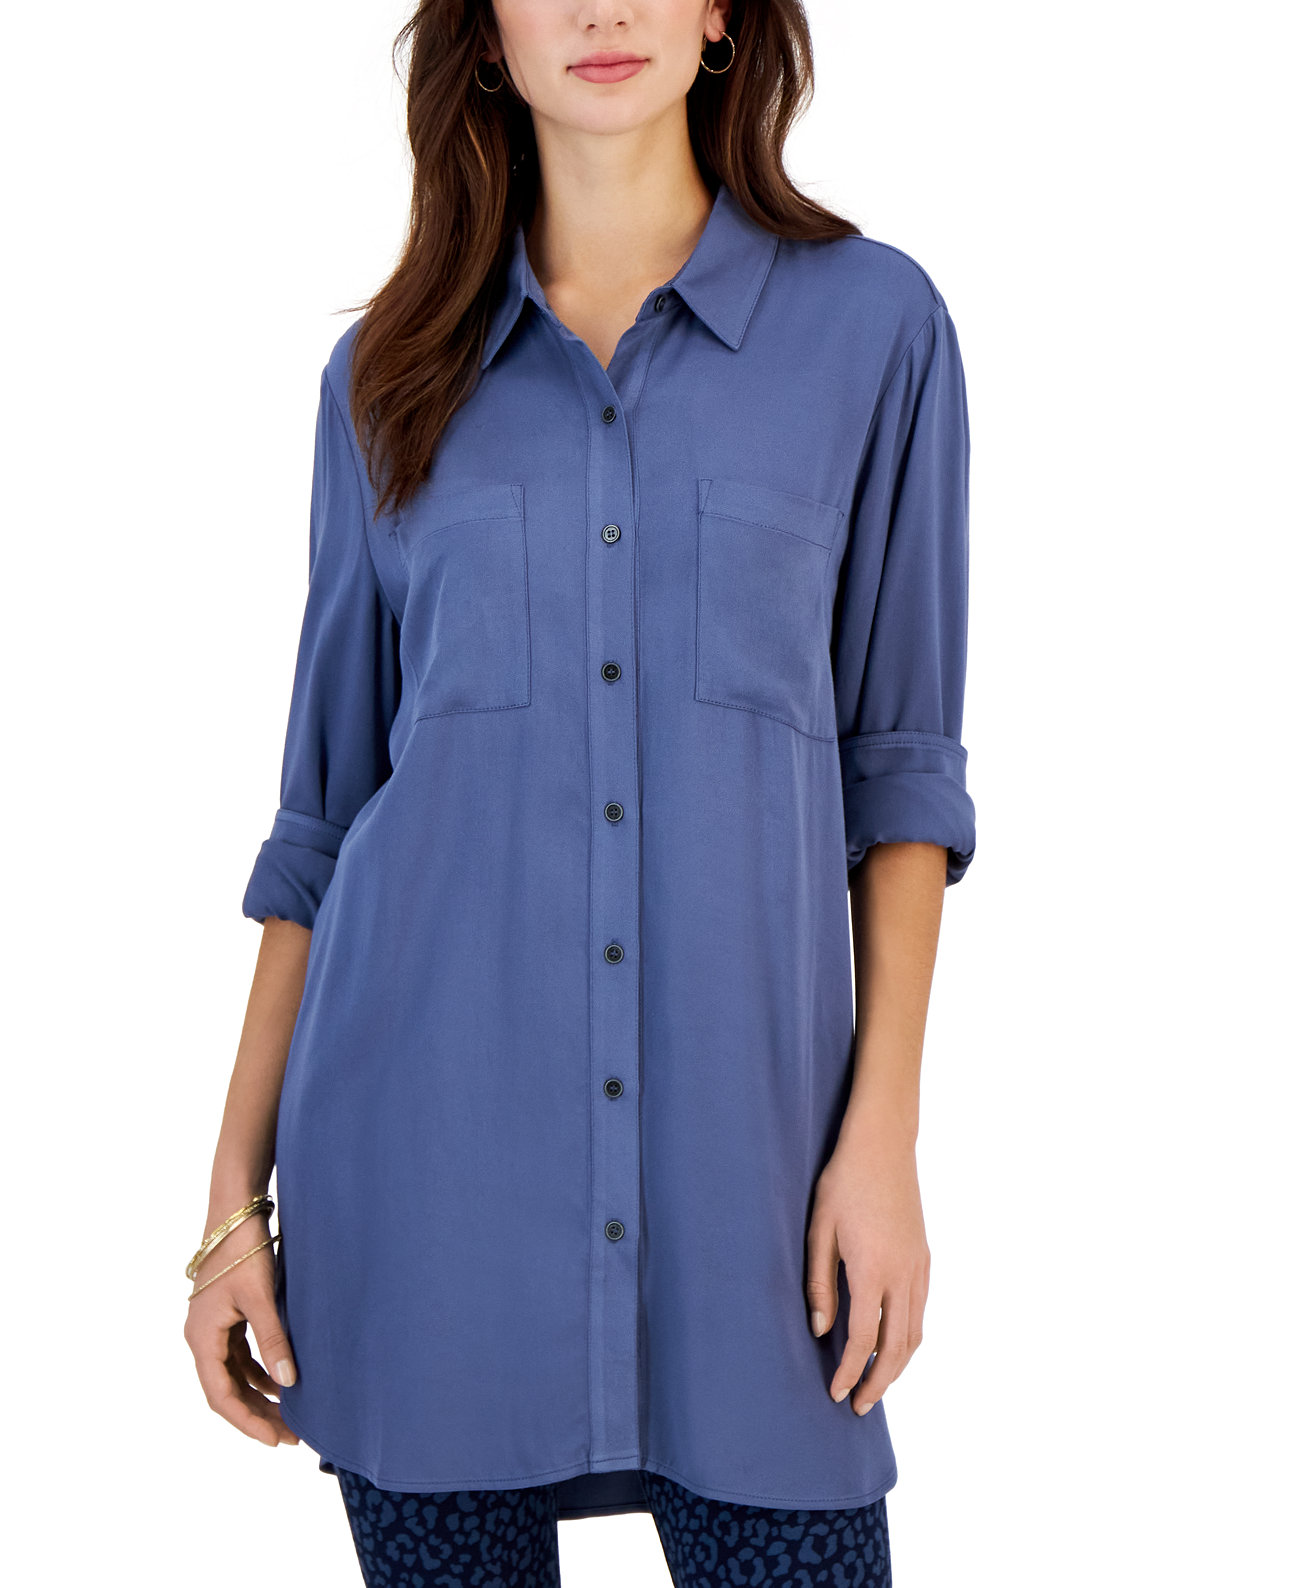 Женская рубашка-туника из твила на пуговицах, созданная для Macy's Style & Co